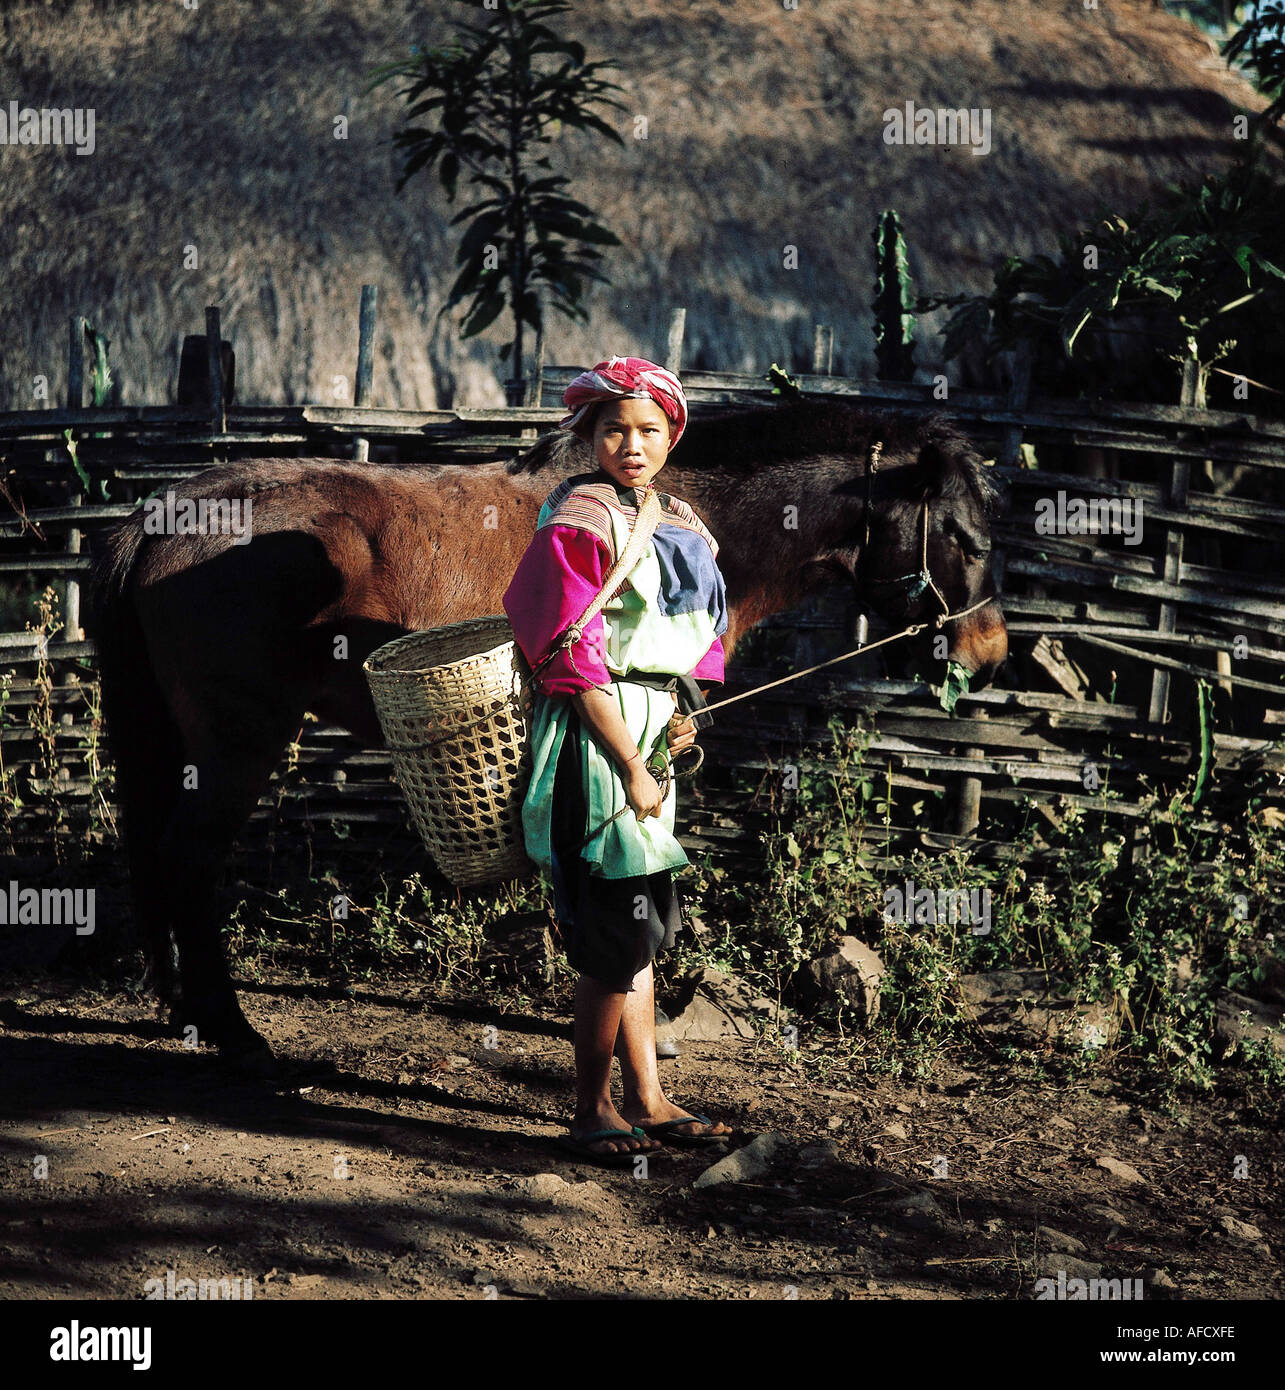 Geografie, Thailand, Menschen, junge Lissu - Frau mit Pferd und Tragekorb, Ganzfigur, Einheimische, Tier, Stock Photo